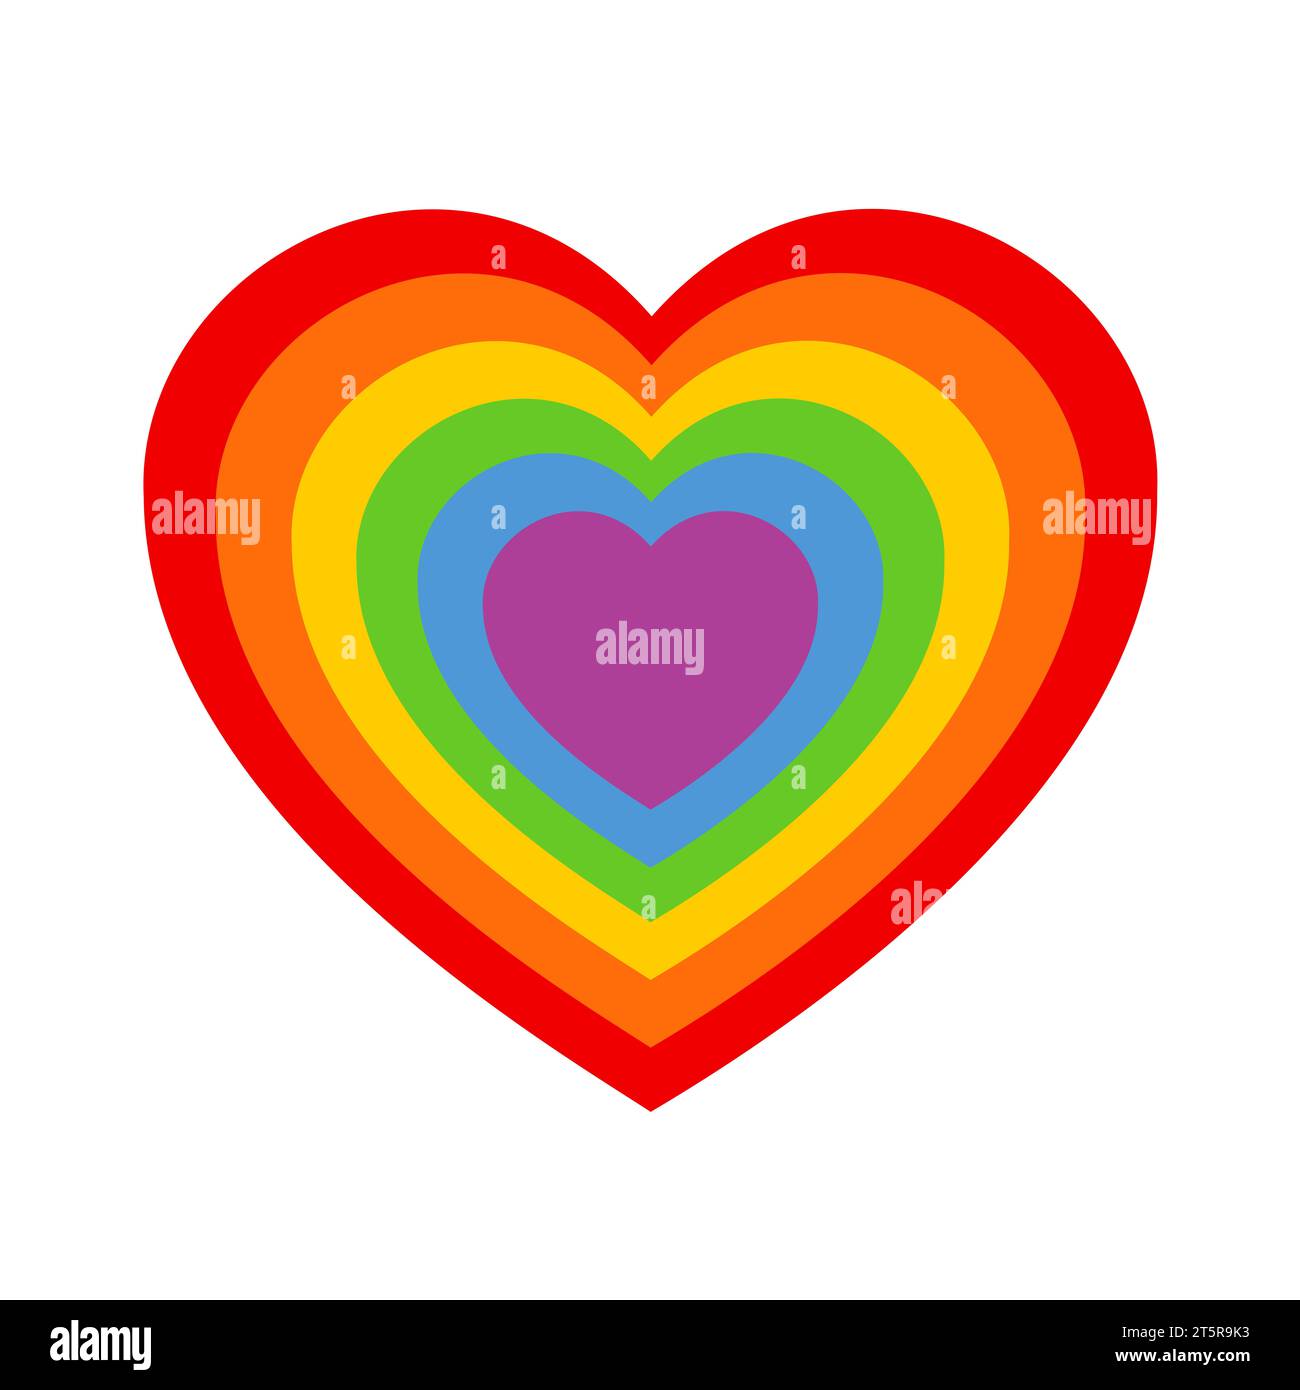 Rainbow amor corazón - homosexualidad y orientación sexual homosexual y relación de amor y asociación. Ilustración vectorial aislada en blanco. Foto de stock